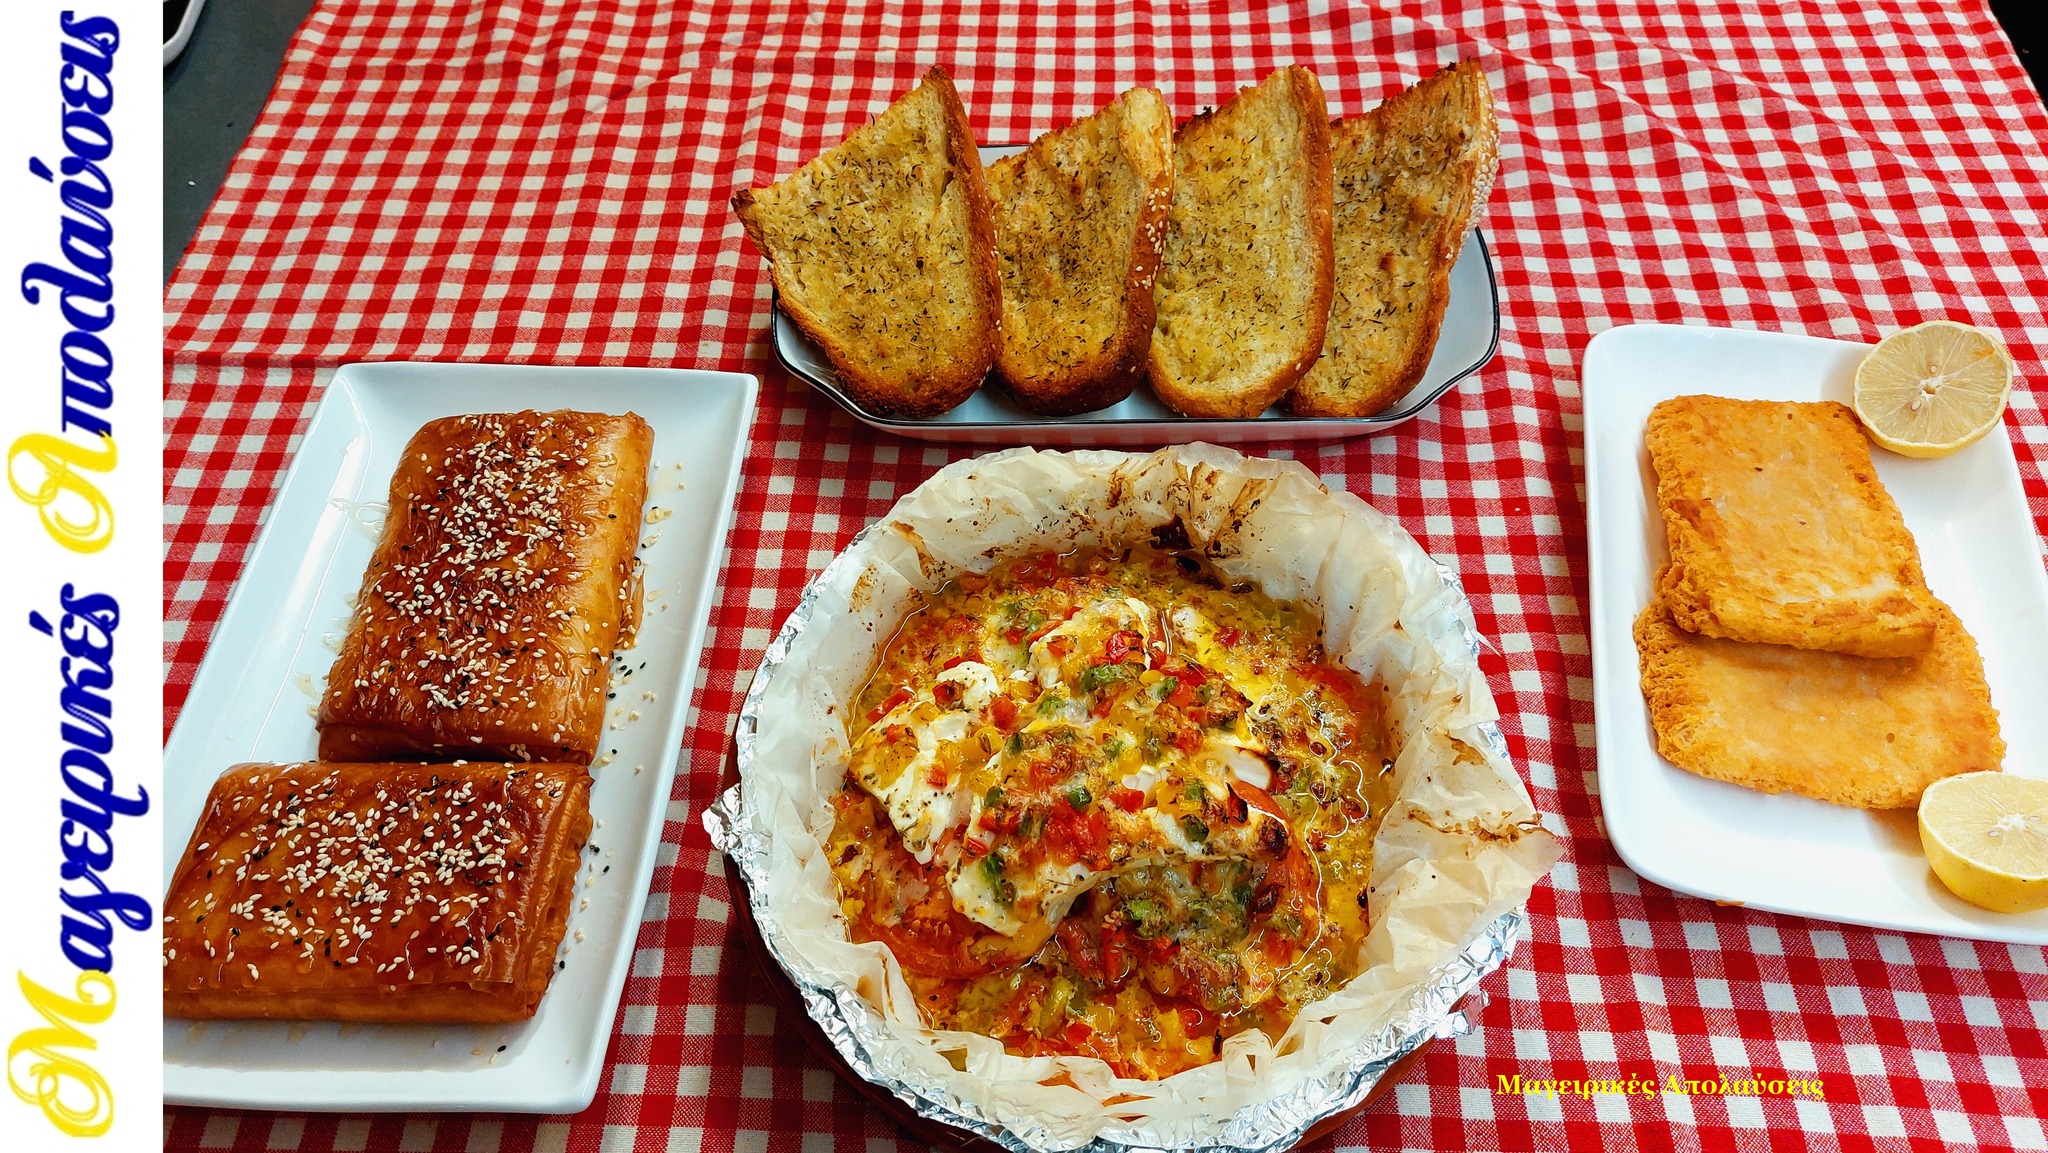 συνταγή-για-μπουγιουρντί-σαγανάκι τυρί-ψητό ψωμί-με-ελαιόλαδο-και-φέτα-ψητή-με-μέλι-και-σουσάμι-